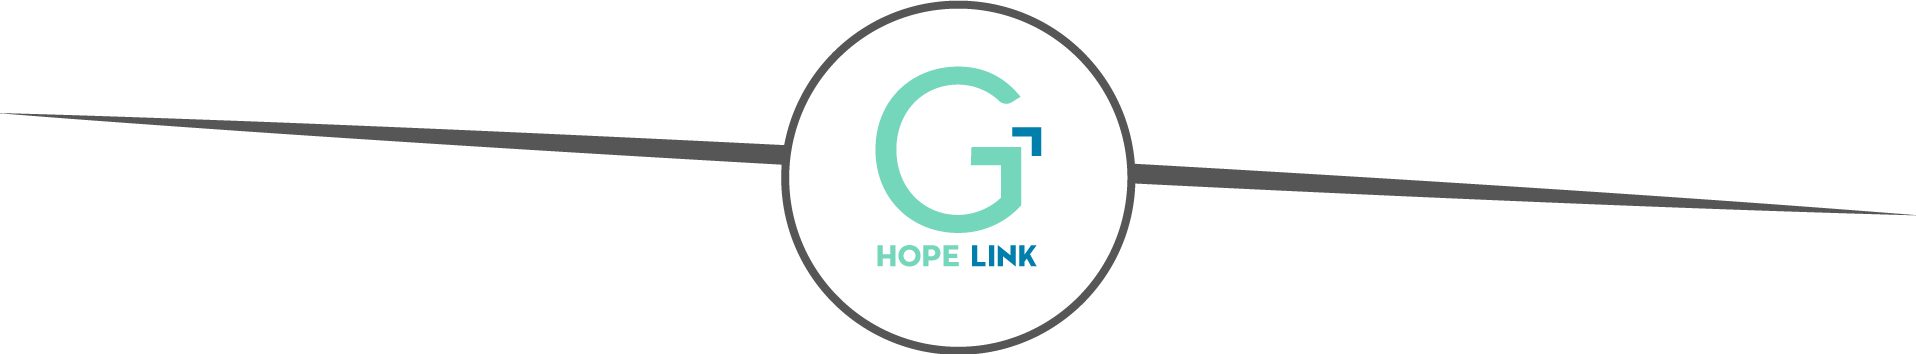 logo hope link Golden